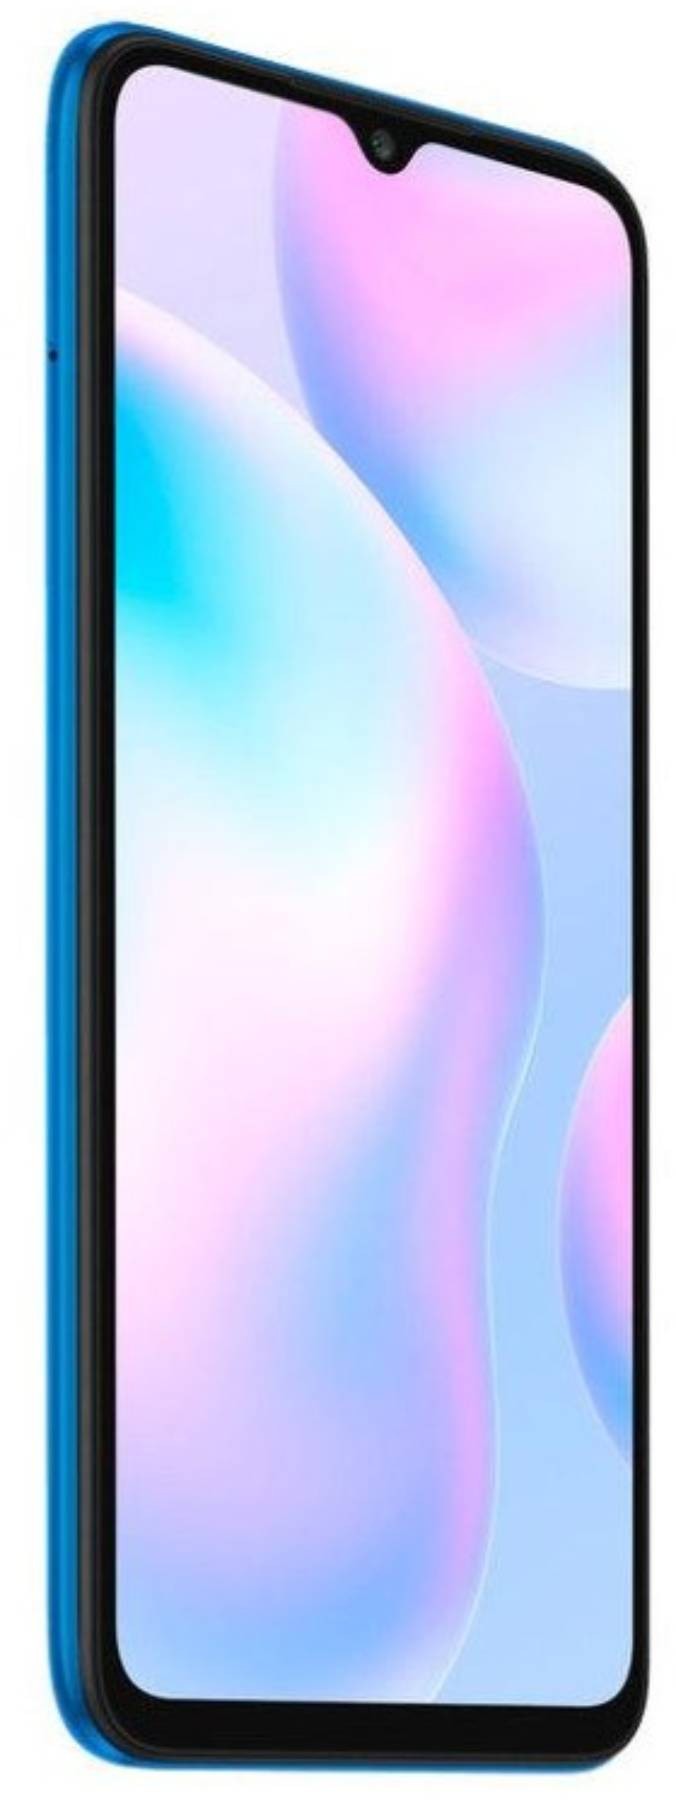 XIAOMI Smartphone Redmi 9A 32 GO Glacial Blue - REDMI-9A-32-BLUE